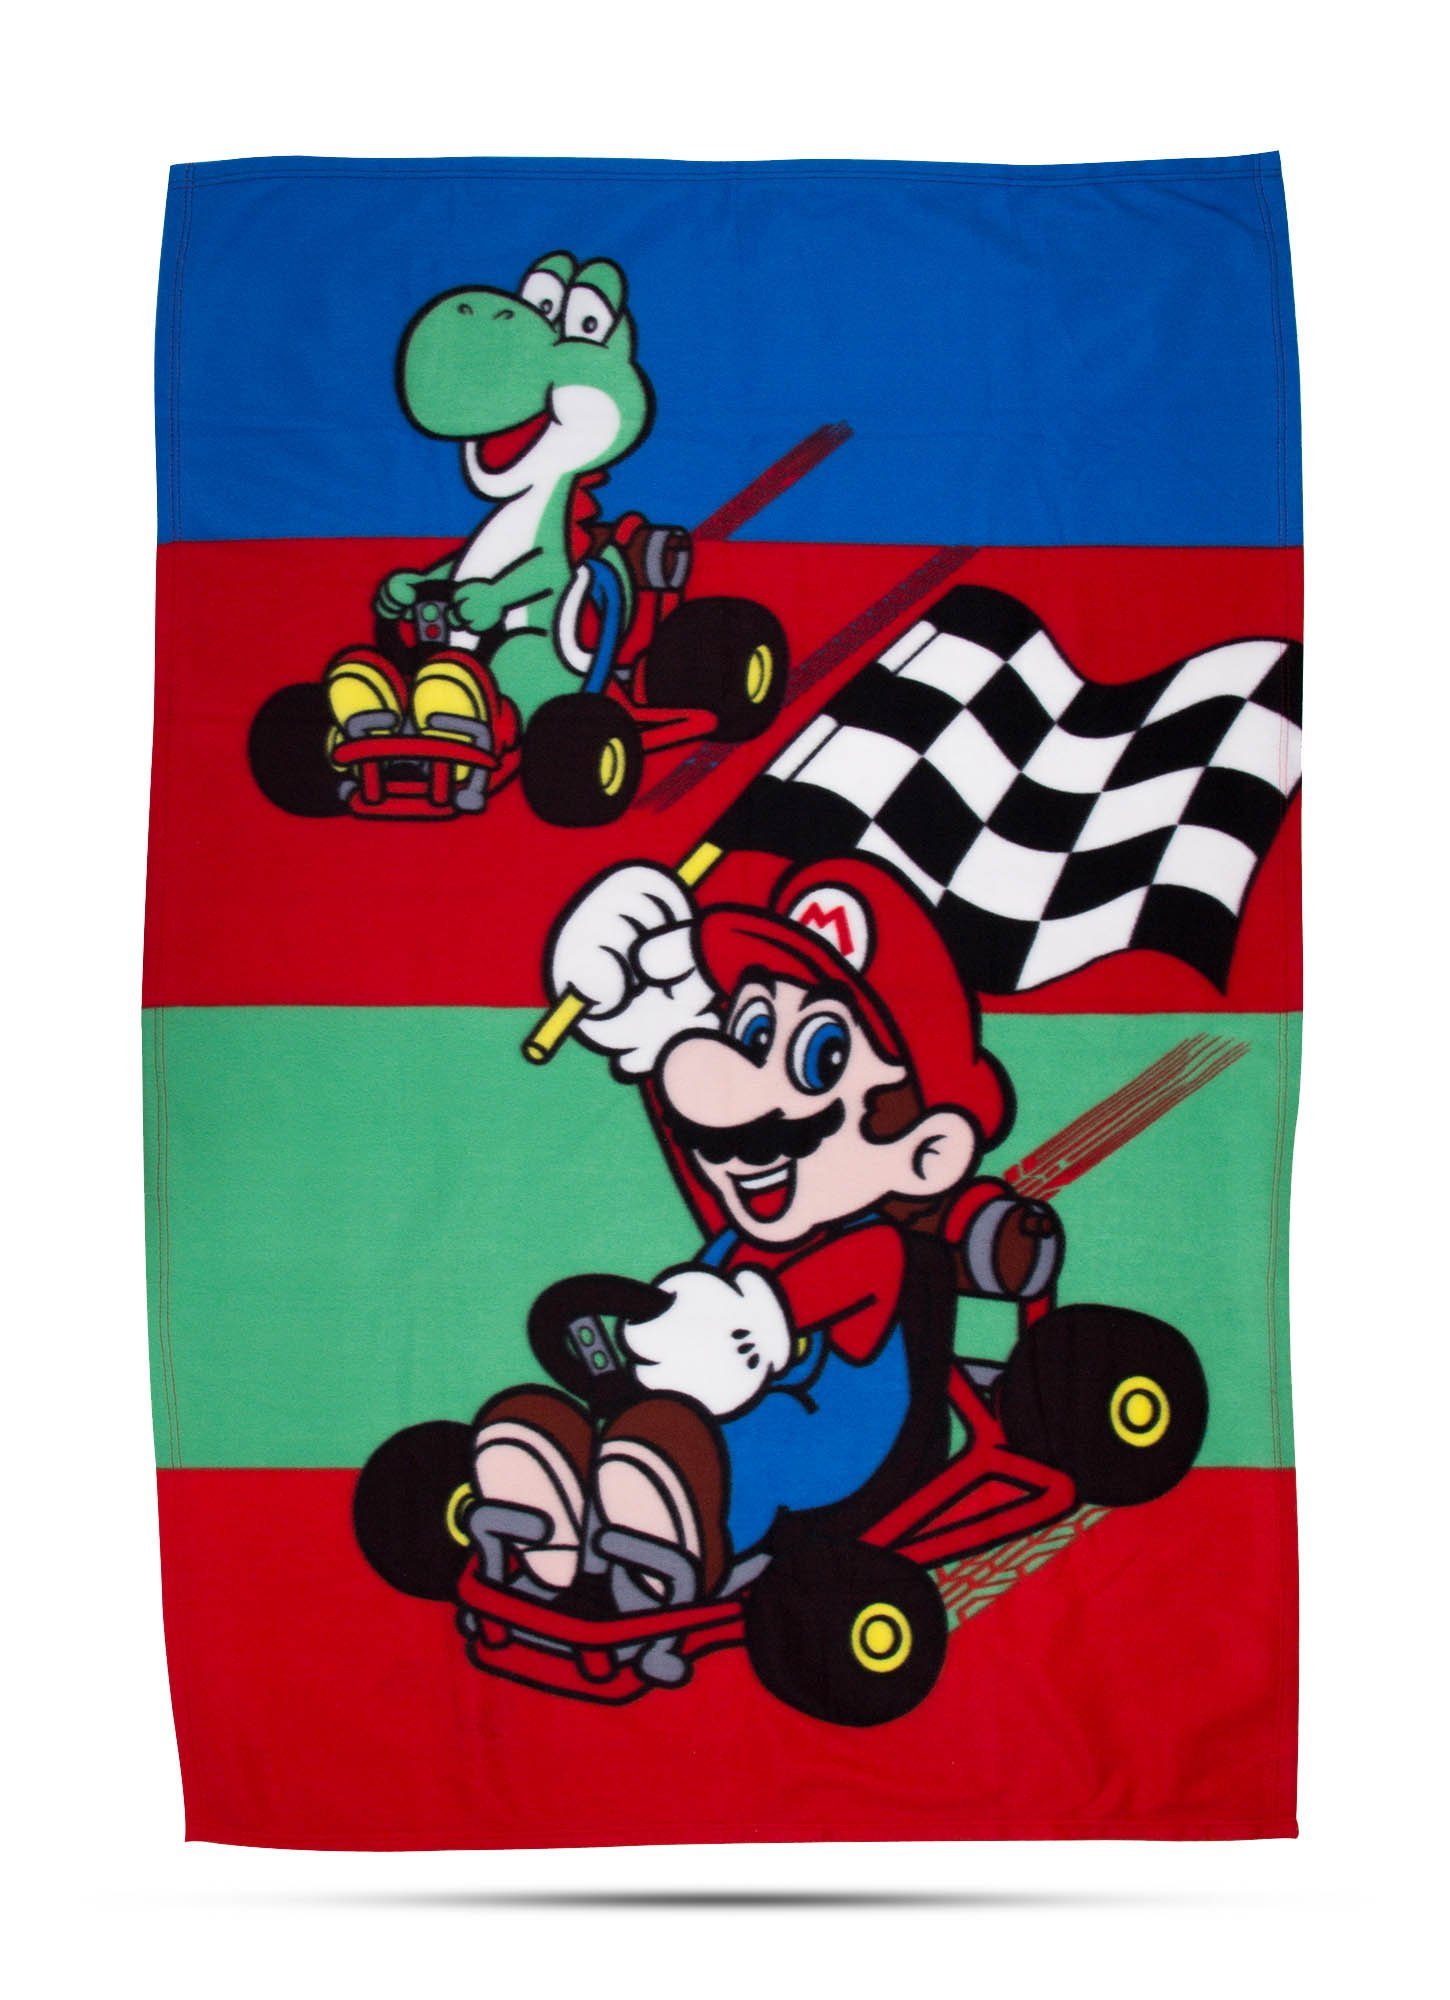 Mario Mariokart 'Champs' Panel Fleece Blanket Throw